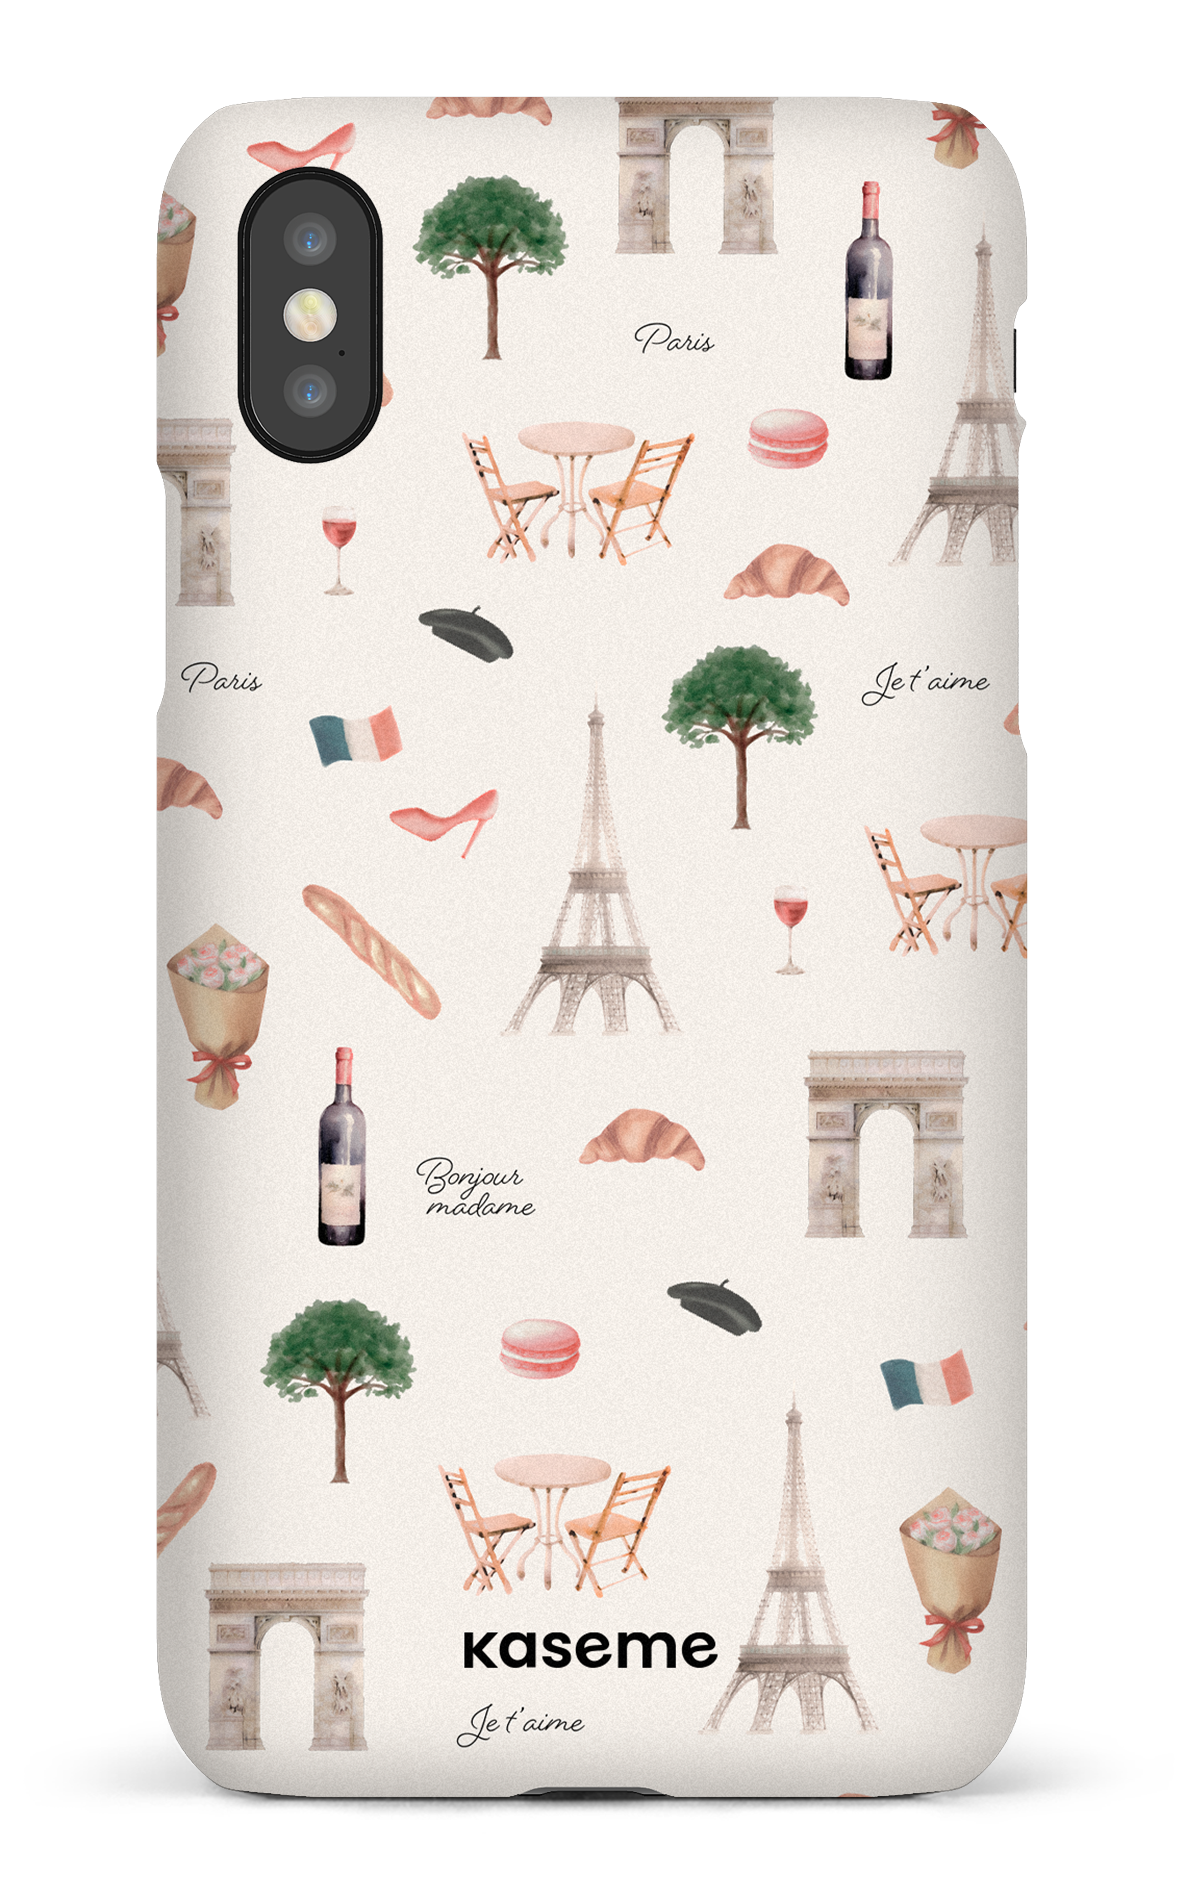 Je t'aime Paris - iPhone X/Xs